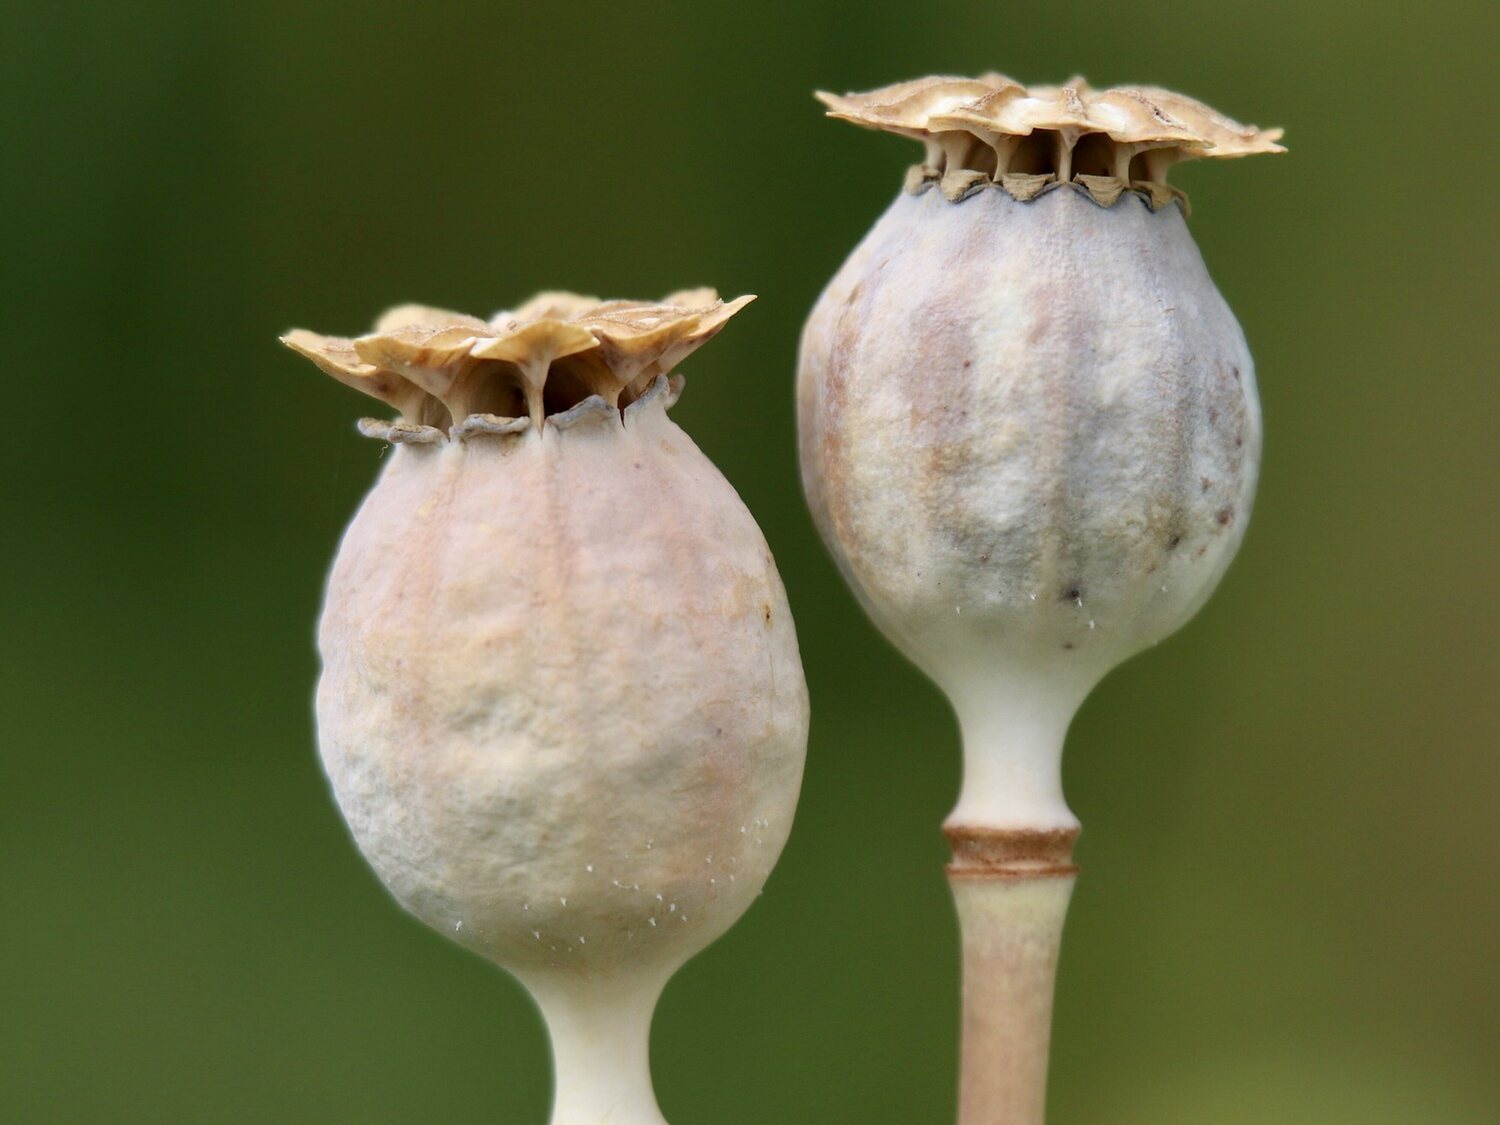 Disminuye al 95% el cultivo de opio en Afganistán tras la prohibición talibán